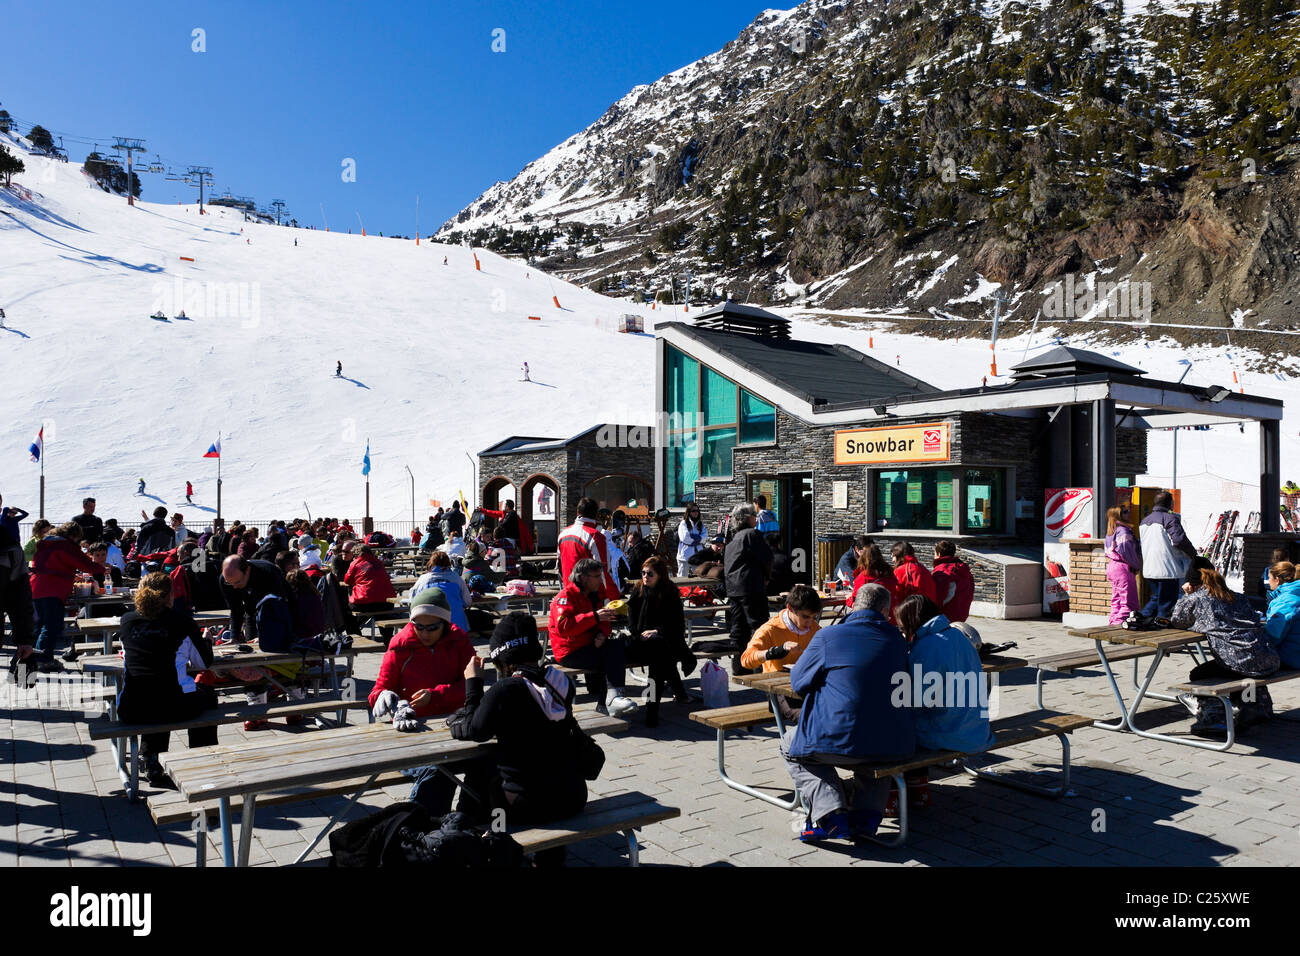 Los esquiadores en la terraza de un restaurante en la montaña Comallempla con las pistas de esquí detrás, Arinsal, la zona de esquí de Vallnord, Andorra Foto de stock